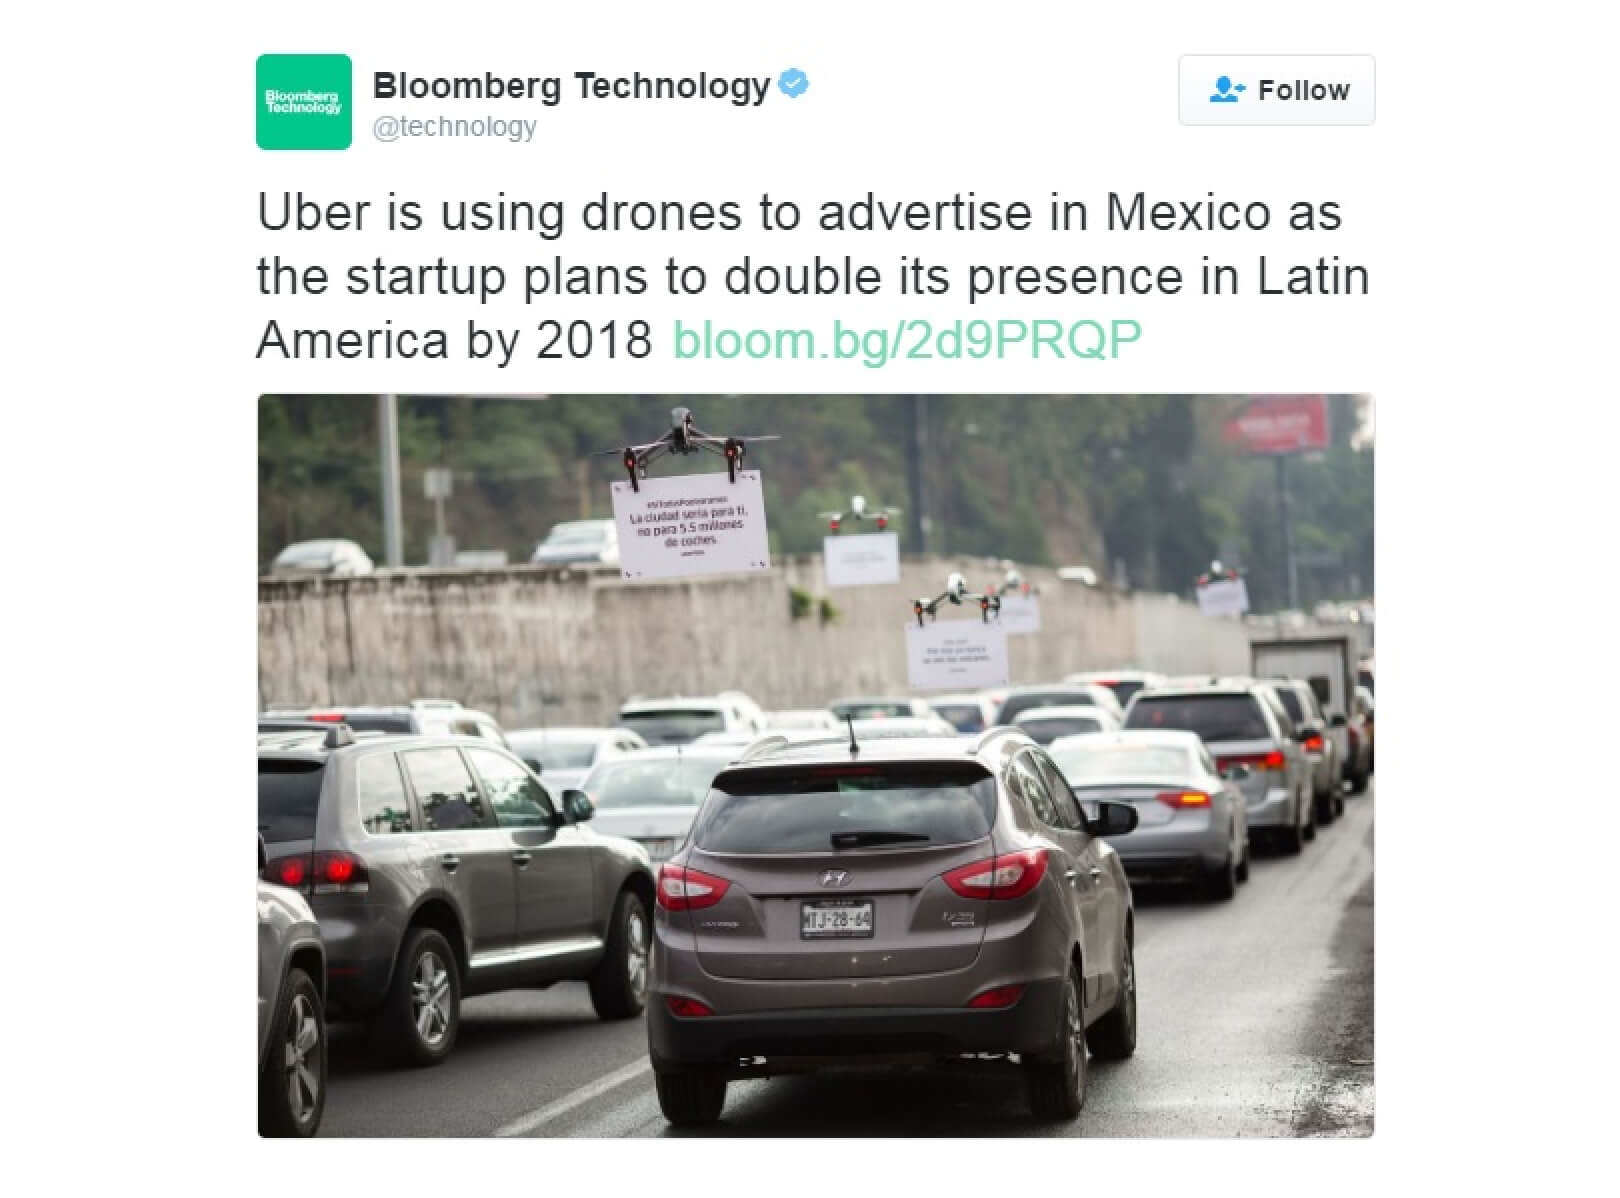 Uber Promoting UberPOOL